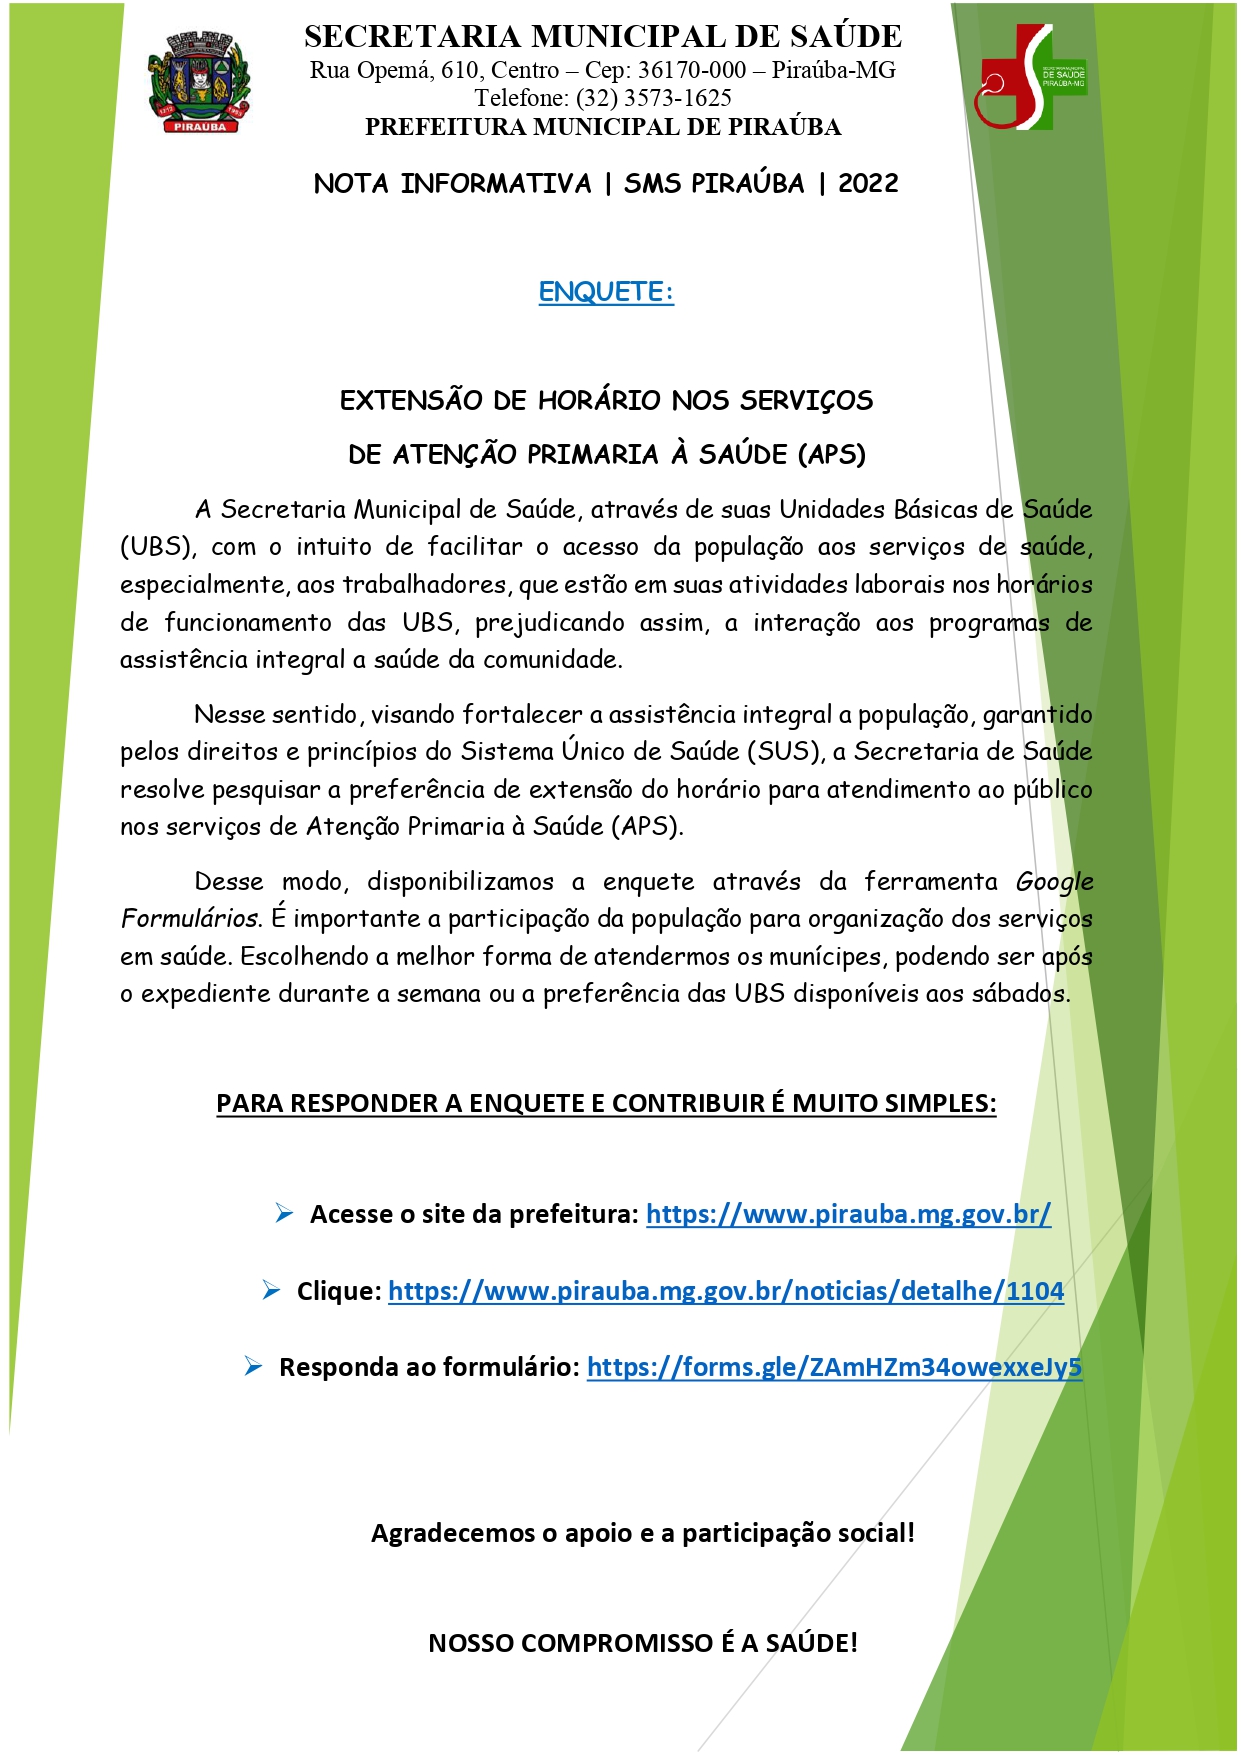 NOTA INFORMATIVA | ENQUETE: EXTENSÃO DE HORÁRIO NOS SERVIÇOS DE ATENÇÃO PRIMARIA À SAÚDE (APS) | SMS PIRAÚBA | 2022